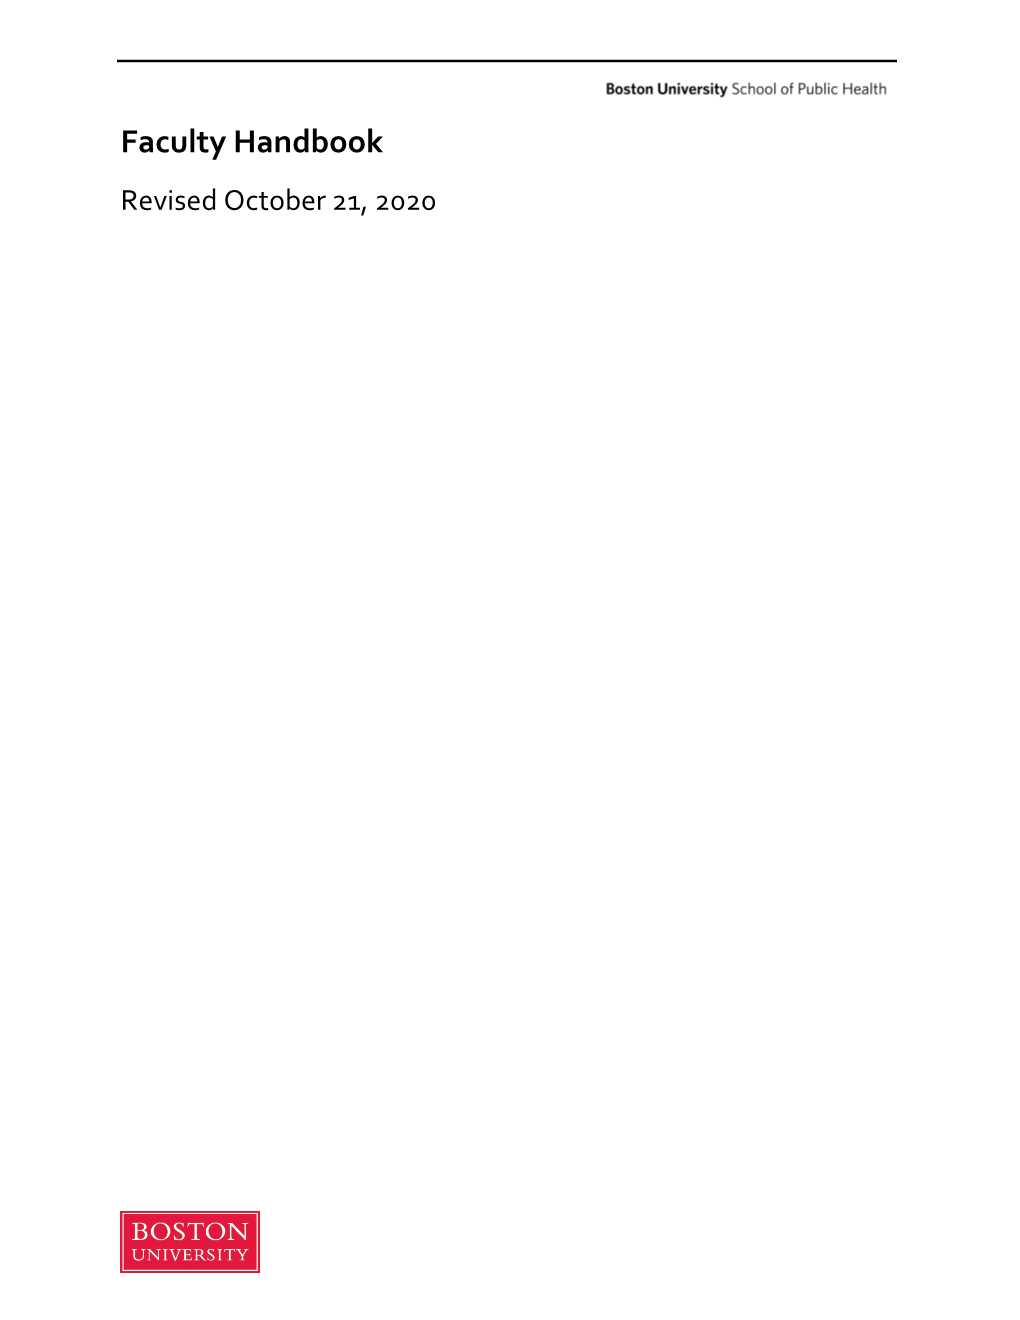 Faculty Handbook Revised October 21, 2020